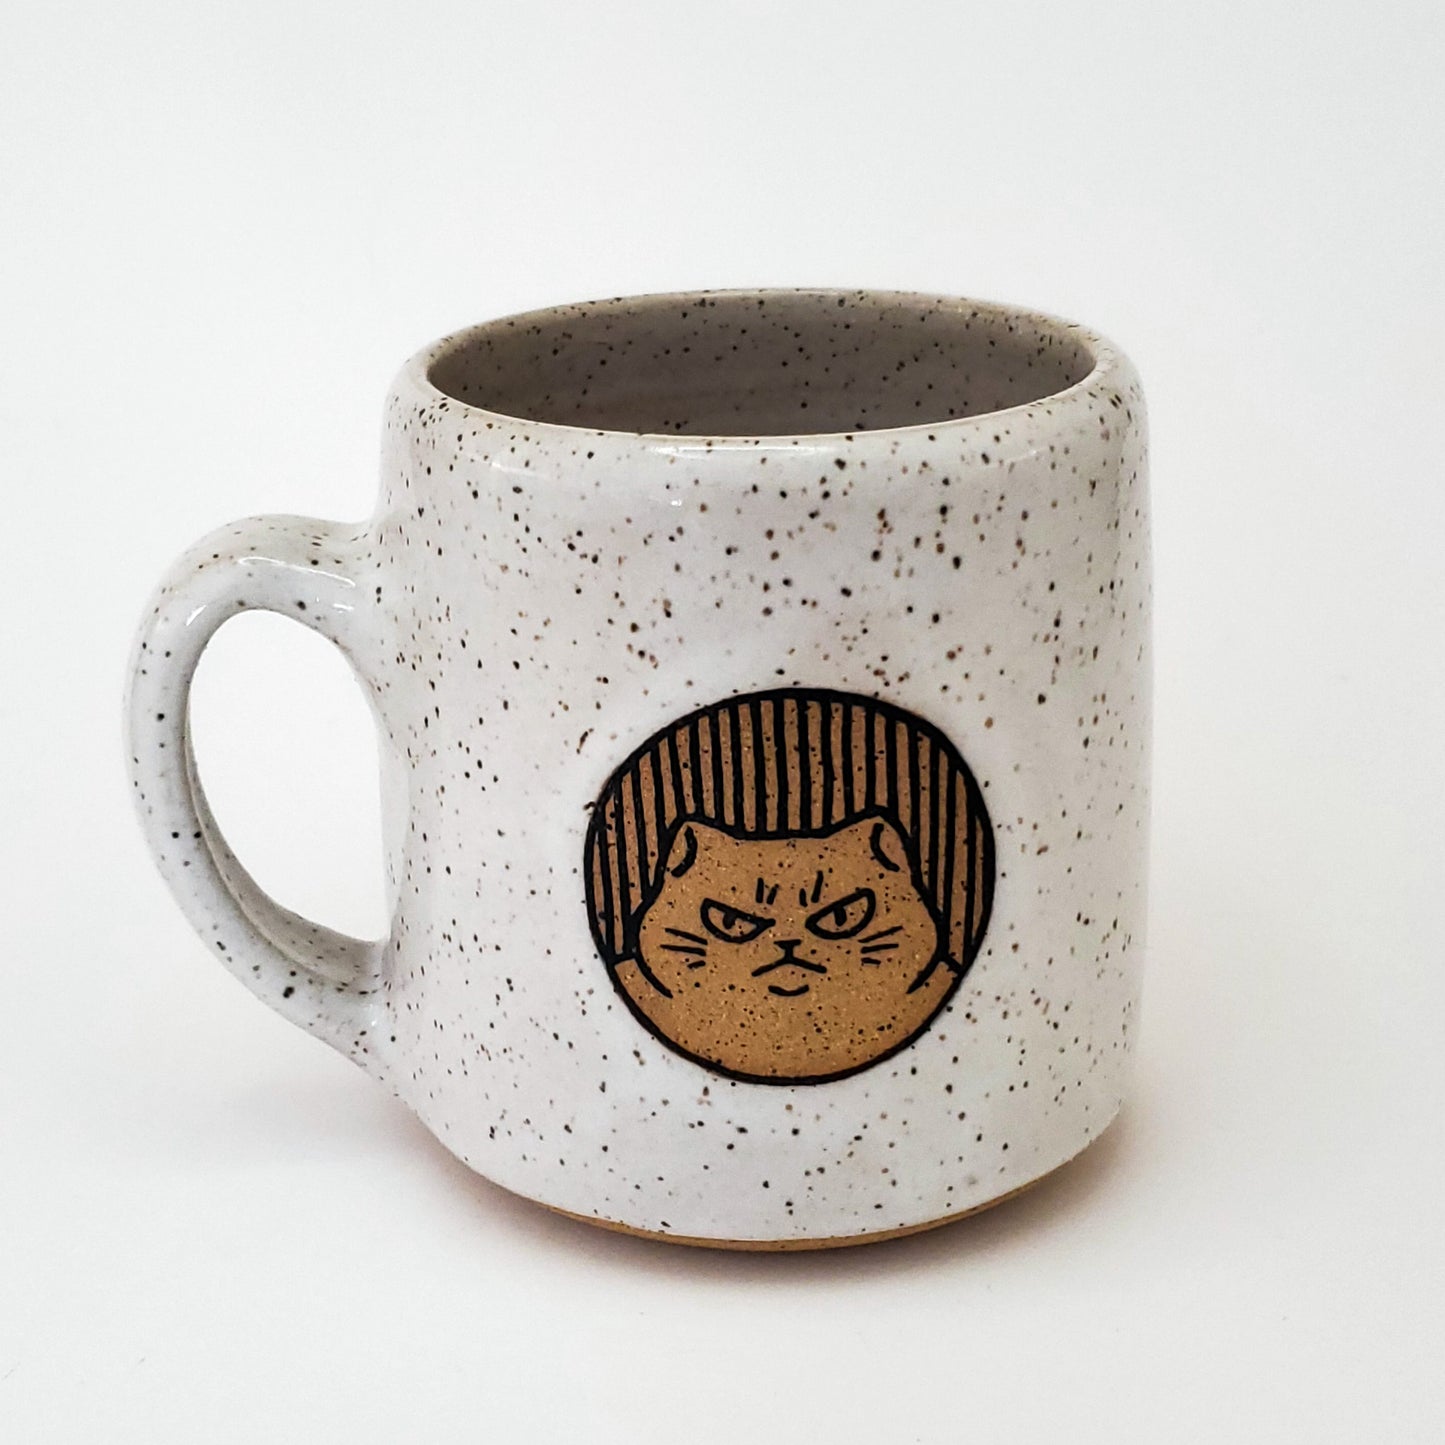 12 oz Chonky Angry Cat Mug*